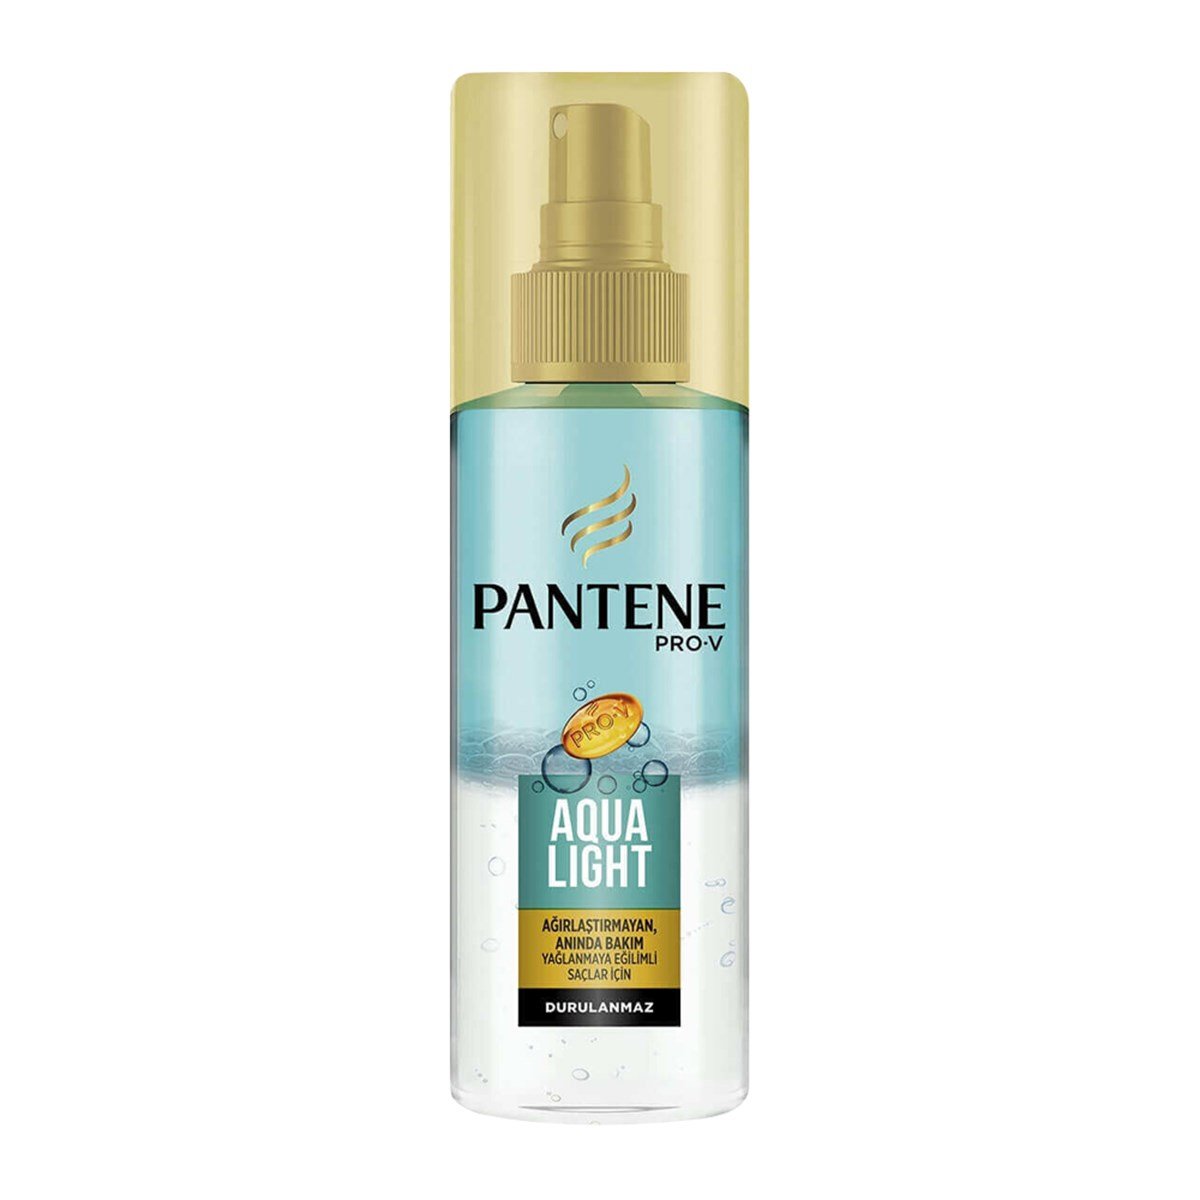 Pantene Aqua Light Anında Bakım Yapan Saç Spreyi 150 ml - Platin